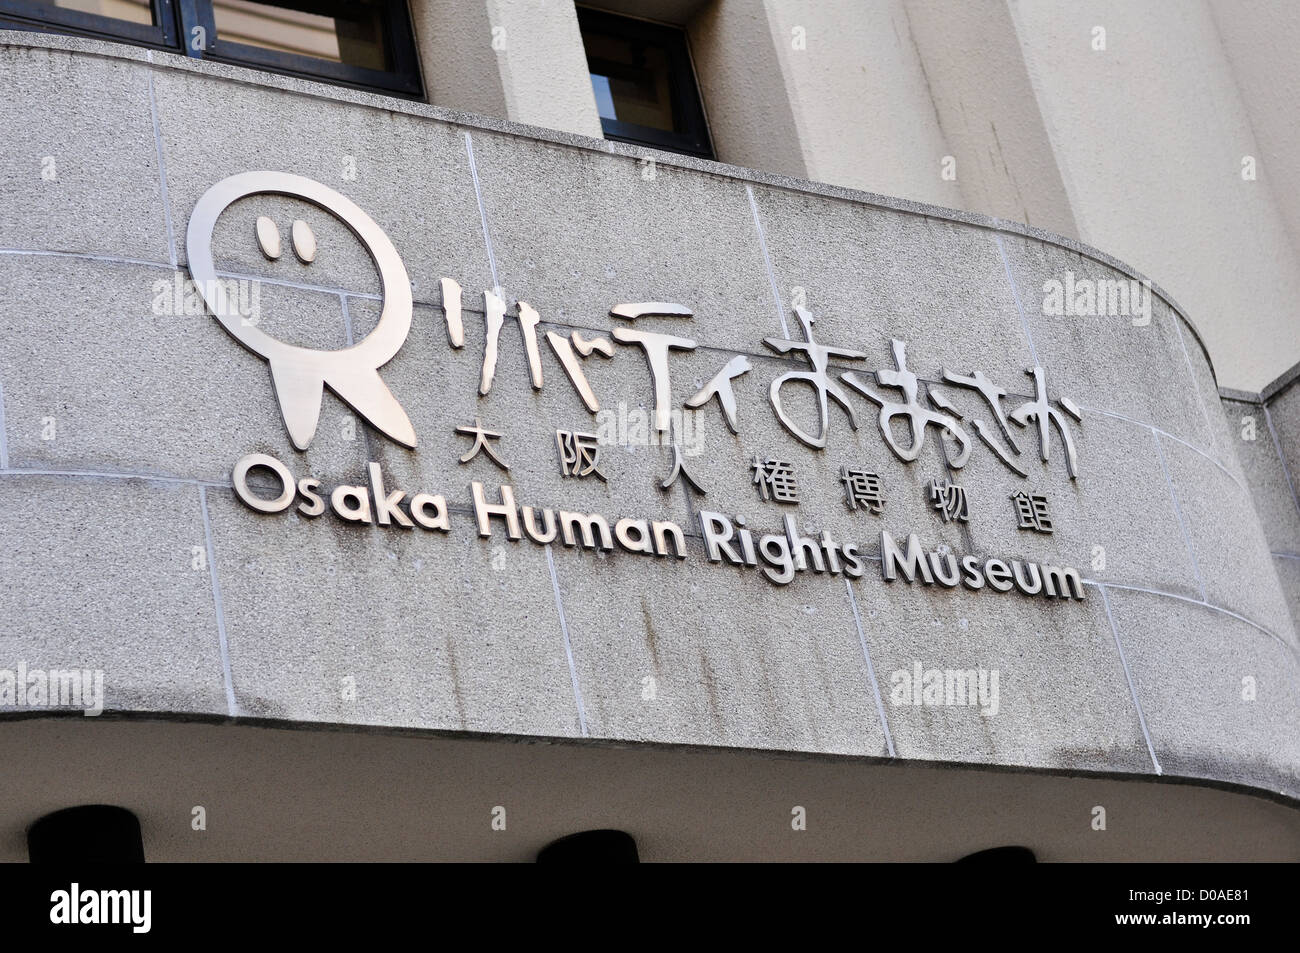 Osaka Diritti Umani museo in Giappone, dedicato alle questioni relative ai diritti umani nel paese. Foto Stock